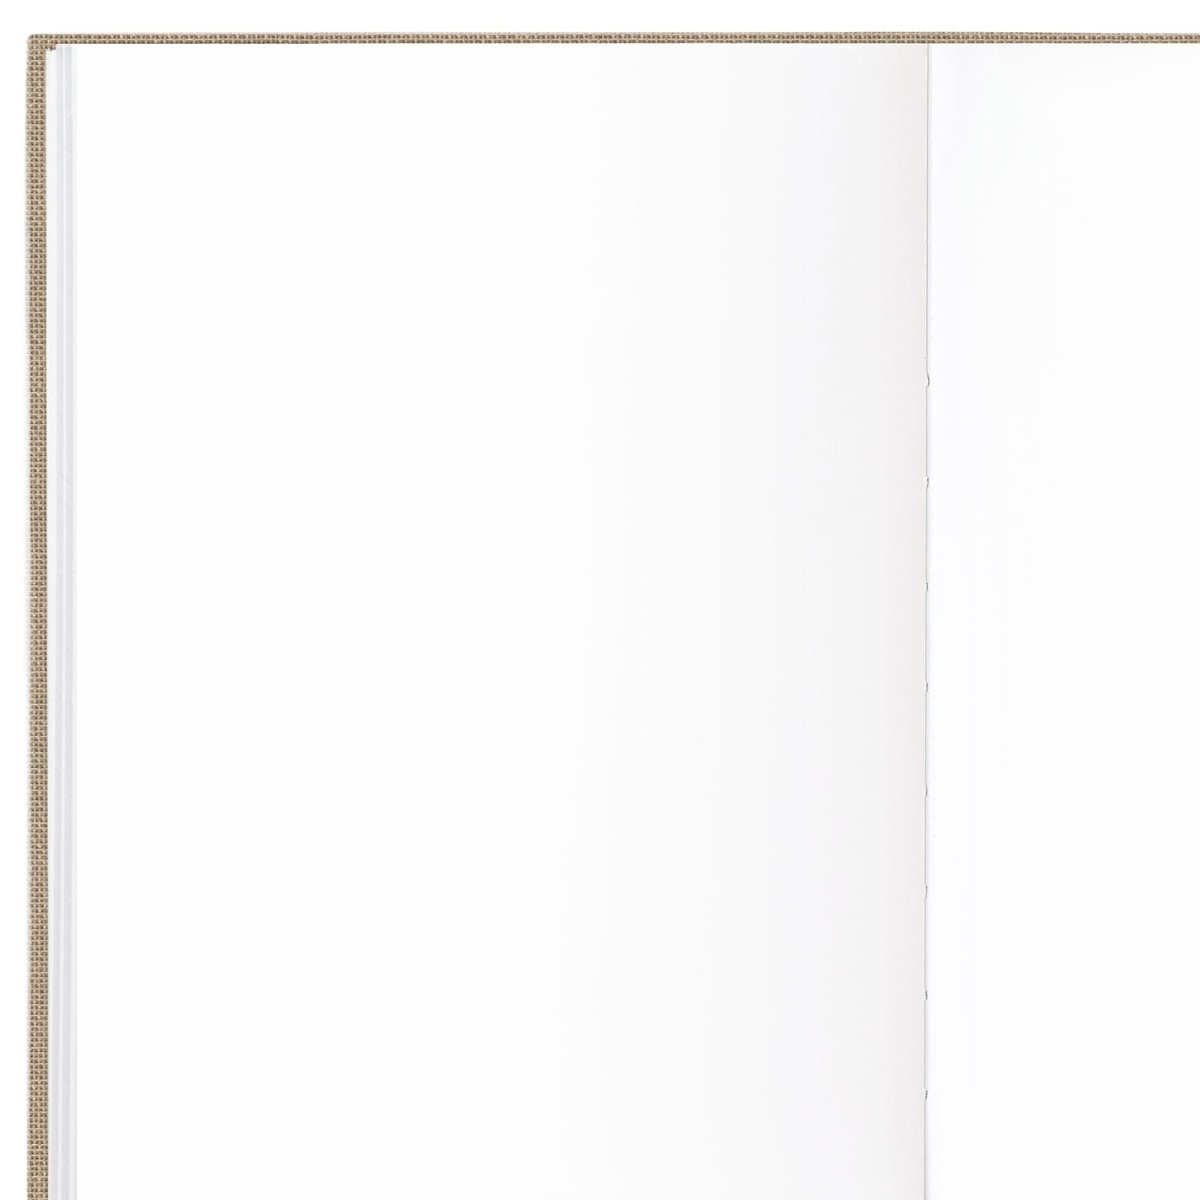 Blank Notebook (Sketchbook) - Hemlock & Oak